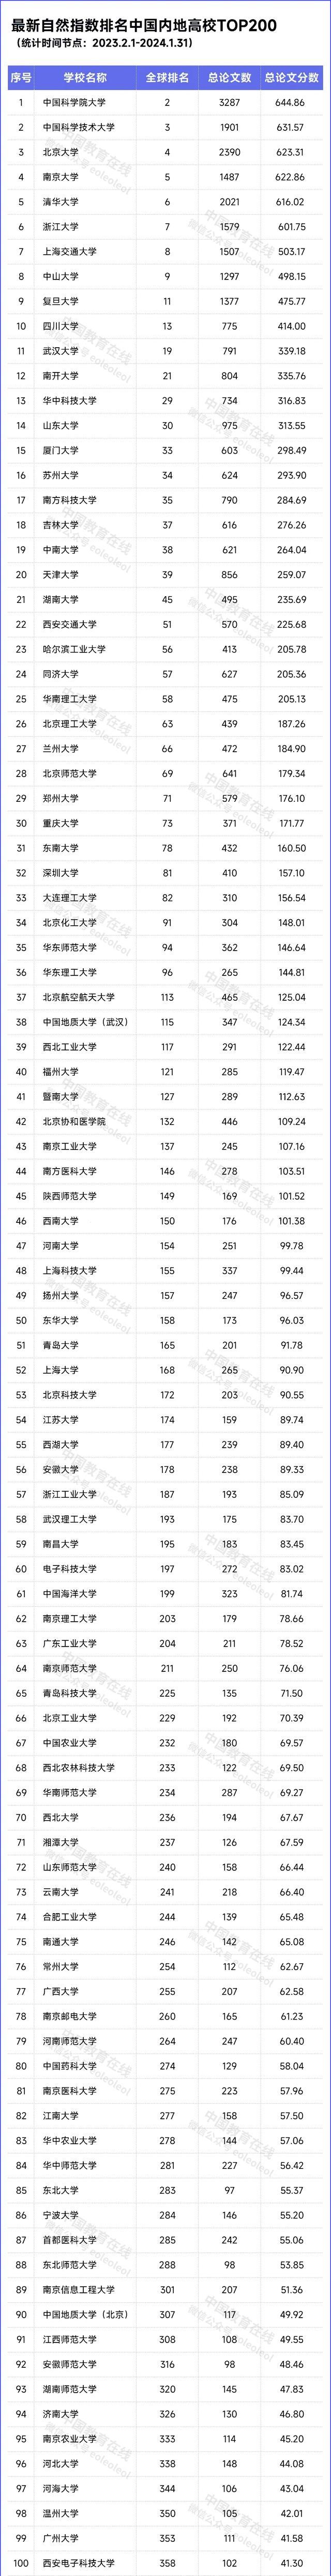 自然指数排名中国内地高校top200名单如下:非双一流高校中,深圳大学